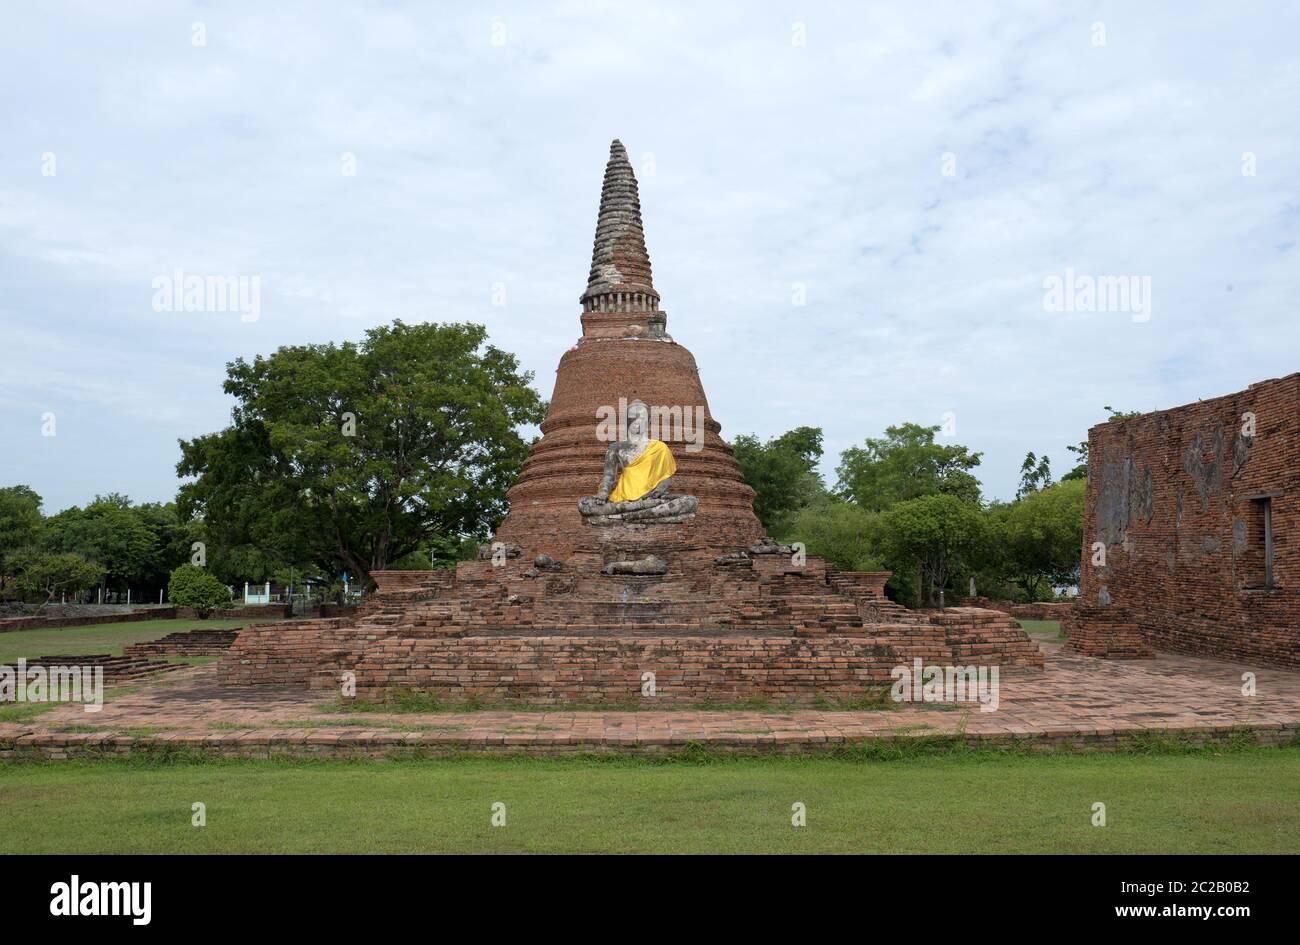 Temples bouddhistes de l'ancienne capitale de la Thaïlande, Ayutthaya; aujourd'hui site classé au patrimoine mondial de l'UNESCO, à Ayutthaya. Banque D'Images